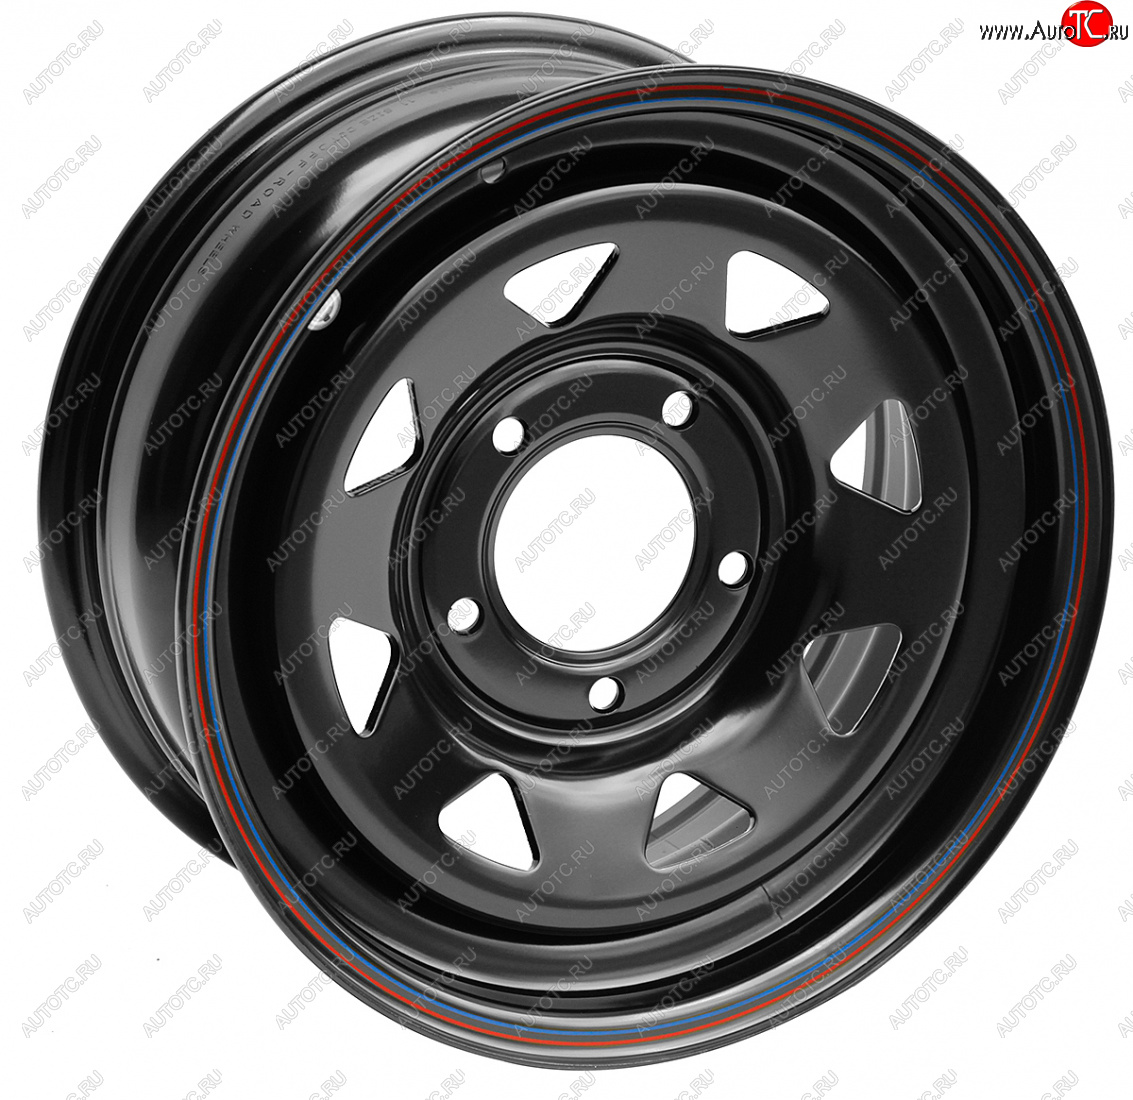 3 999 р. Штампованый диск OFF-ROAD Wheels (усиленный, треугольник мелкий) 7.0x15 Suzuki Jimny JB23/JB43 1-ый рестайлинг (2002-2012) 5x139.7xDIA105.0xET25.0 (Цвет: черный)